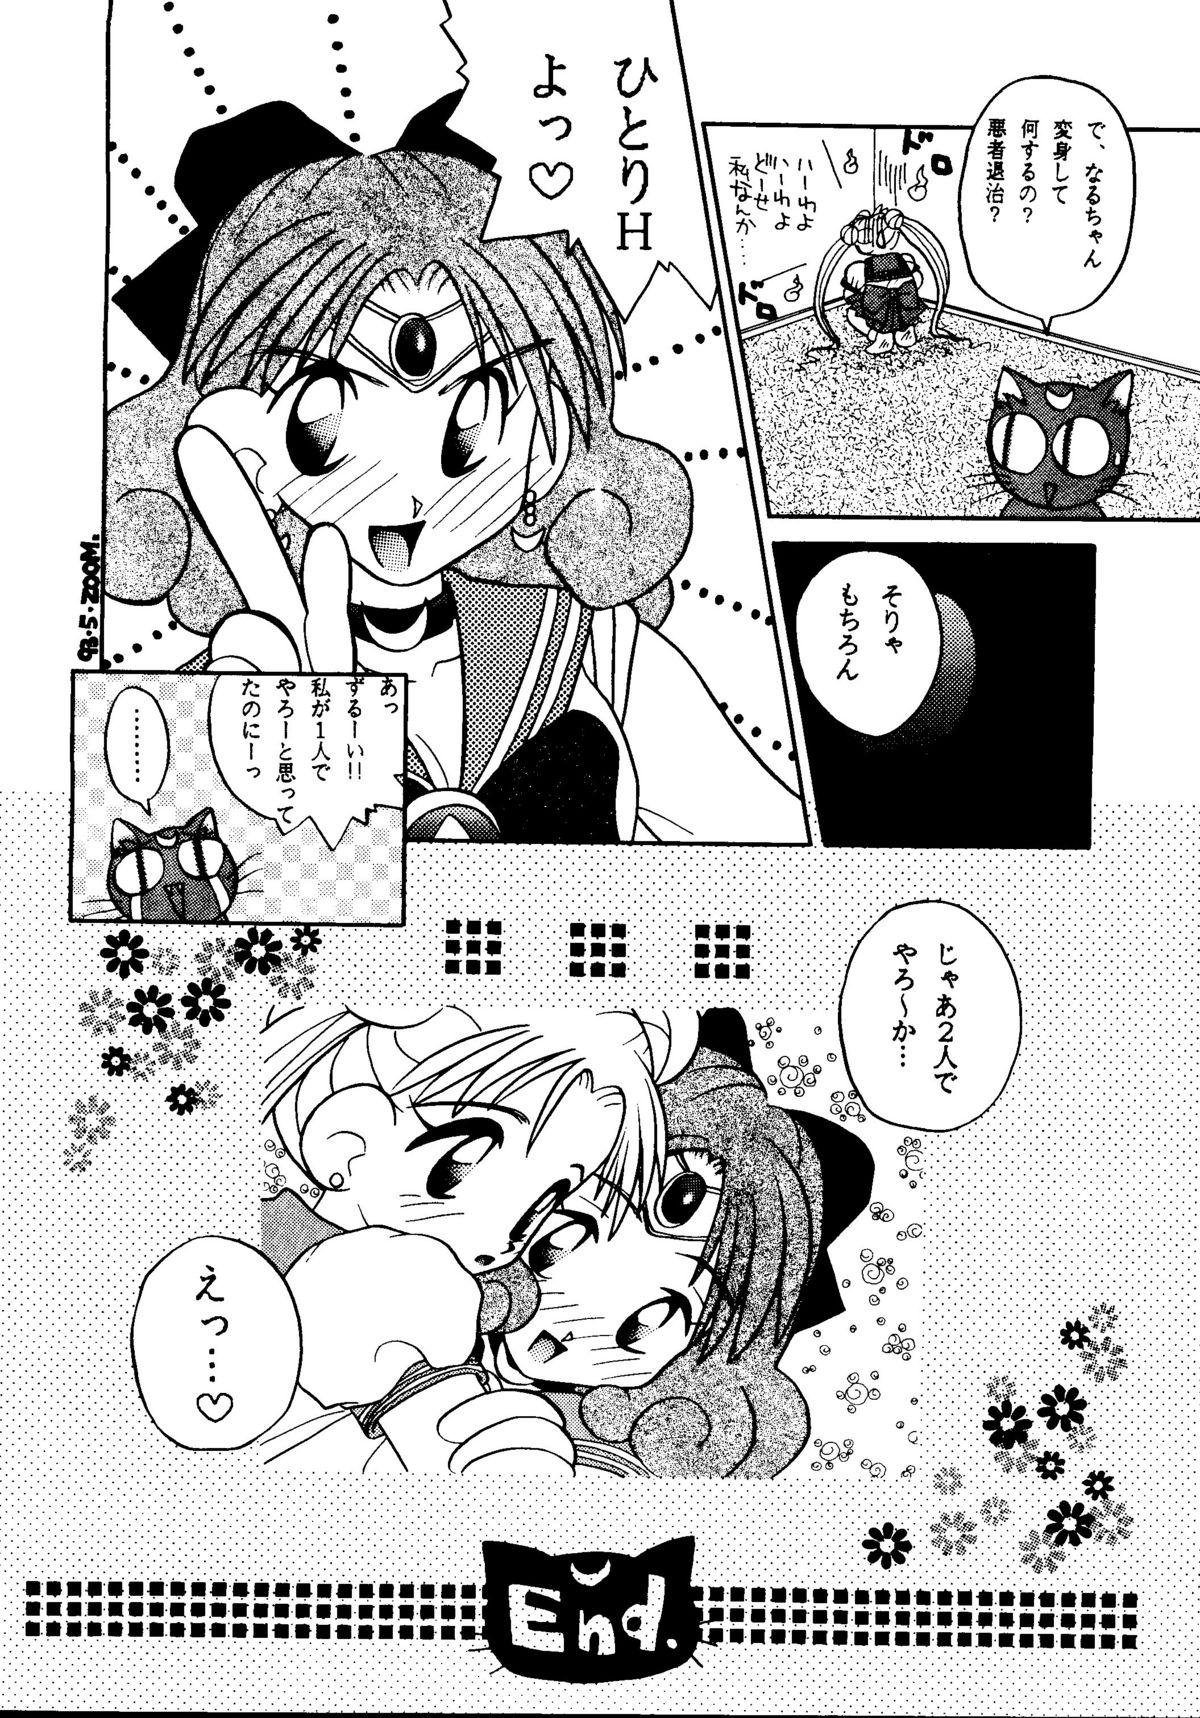 Petera GG3 SP 4 - Paradise City 2 - Sailor moon Futanari - Page 10